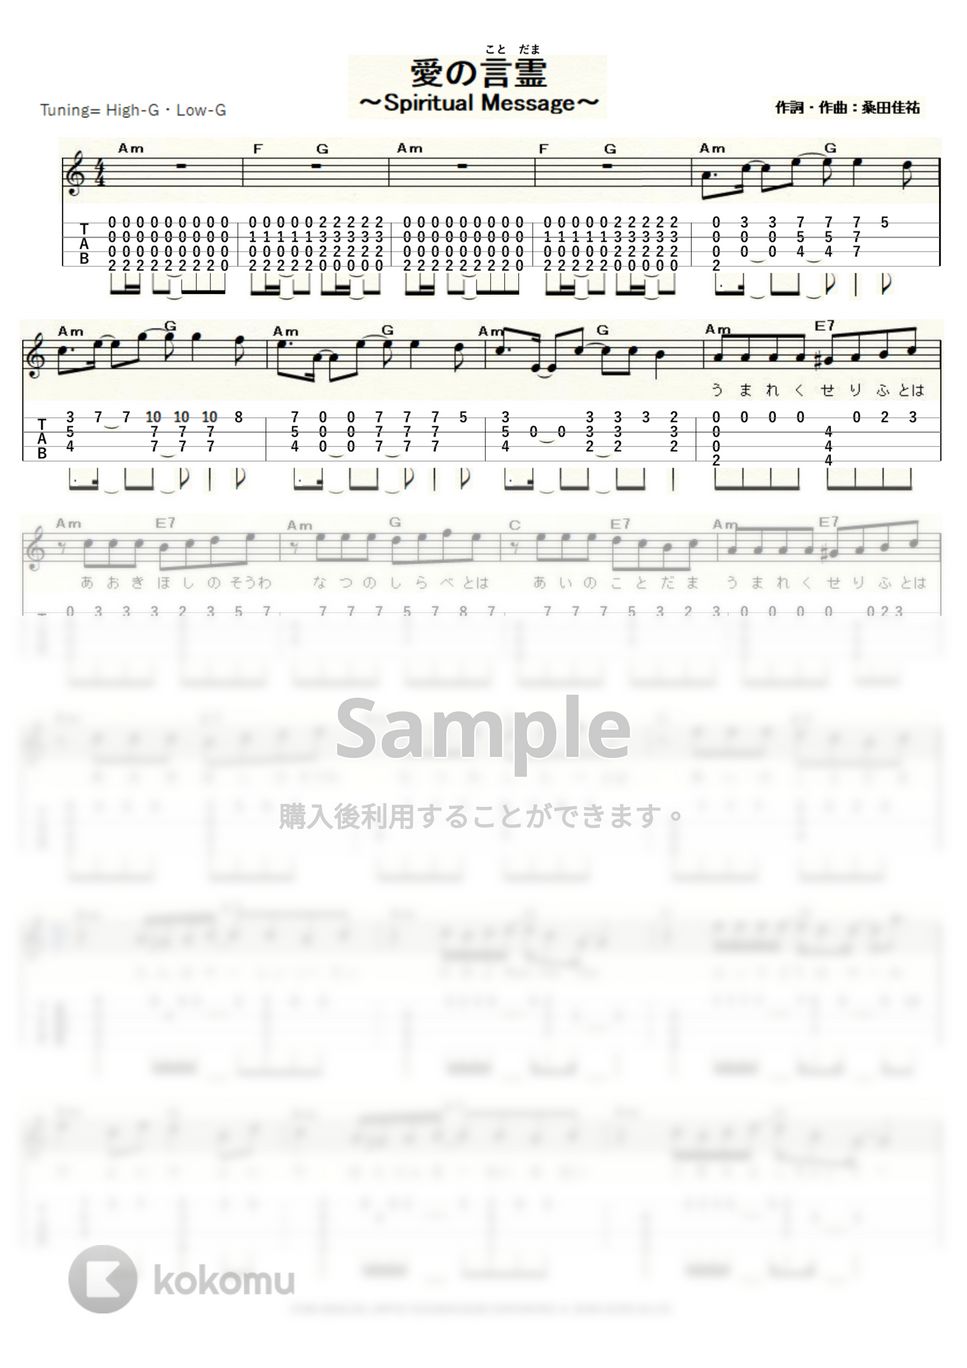 サザンオールスターズ - 愛の言霊～Spiritual Message～ (ｳｸﾚﾚｿﾛ / High-G・Low-G / 中級) by ukulelepapa